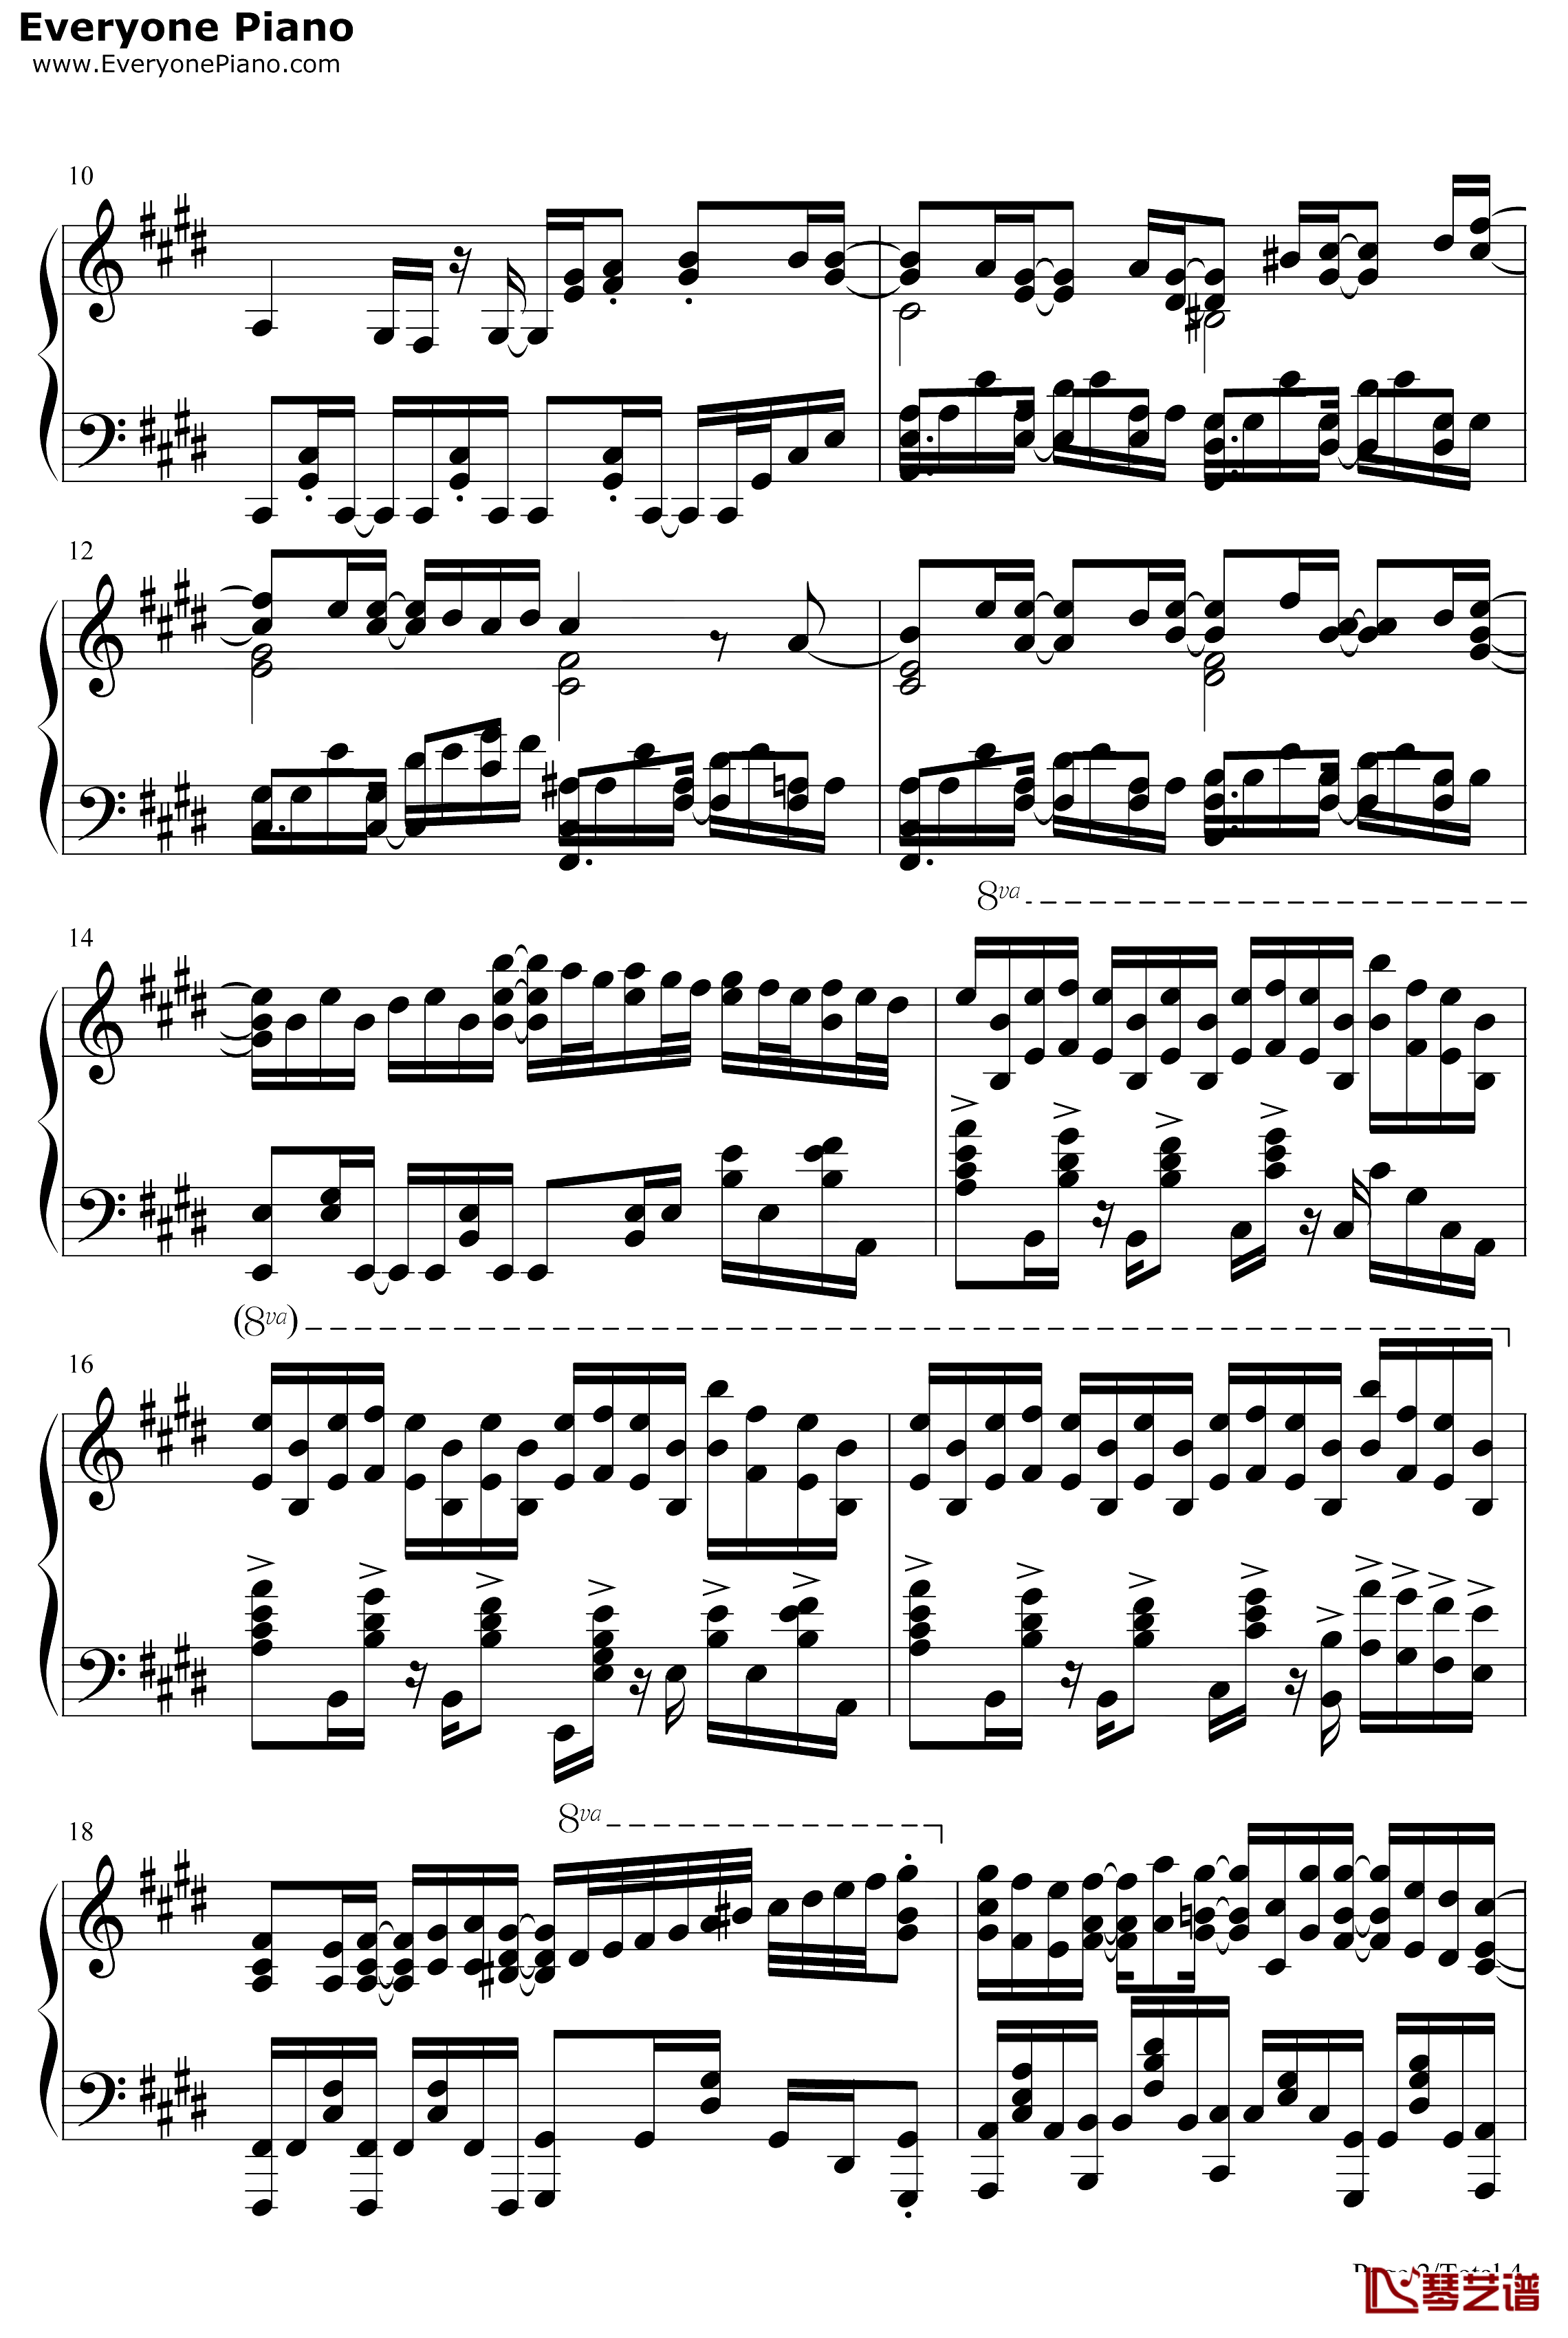 キヅアト钢琴谱-センチミリメンタル-GIVENOP2